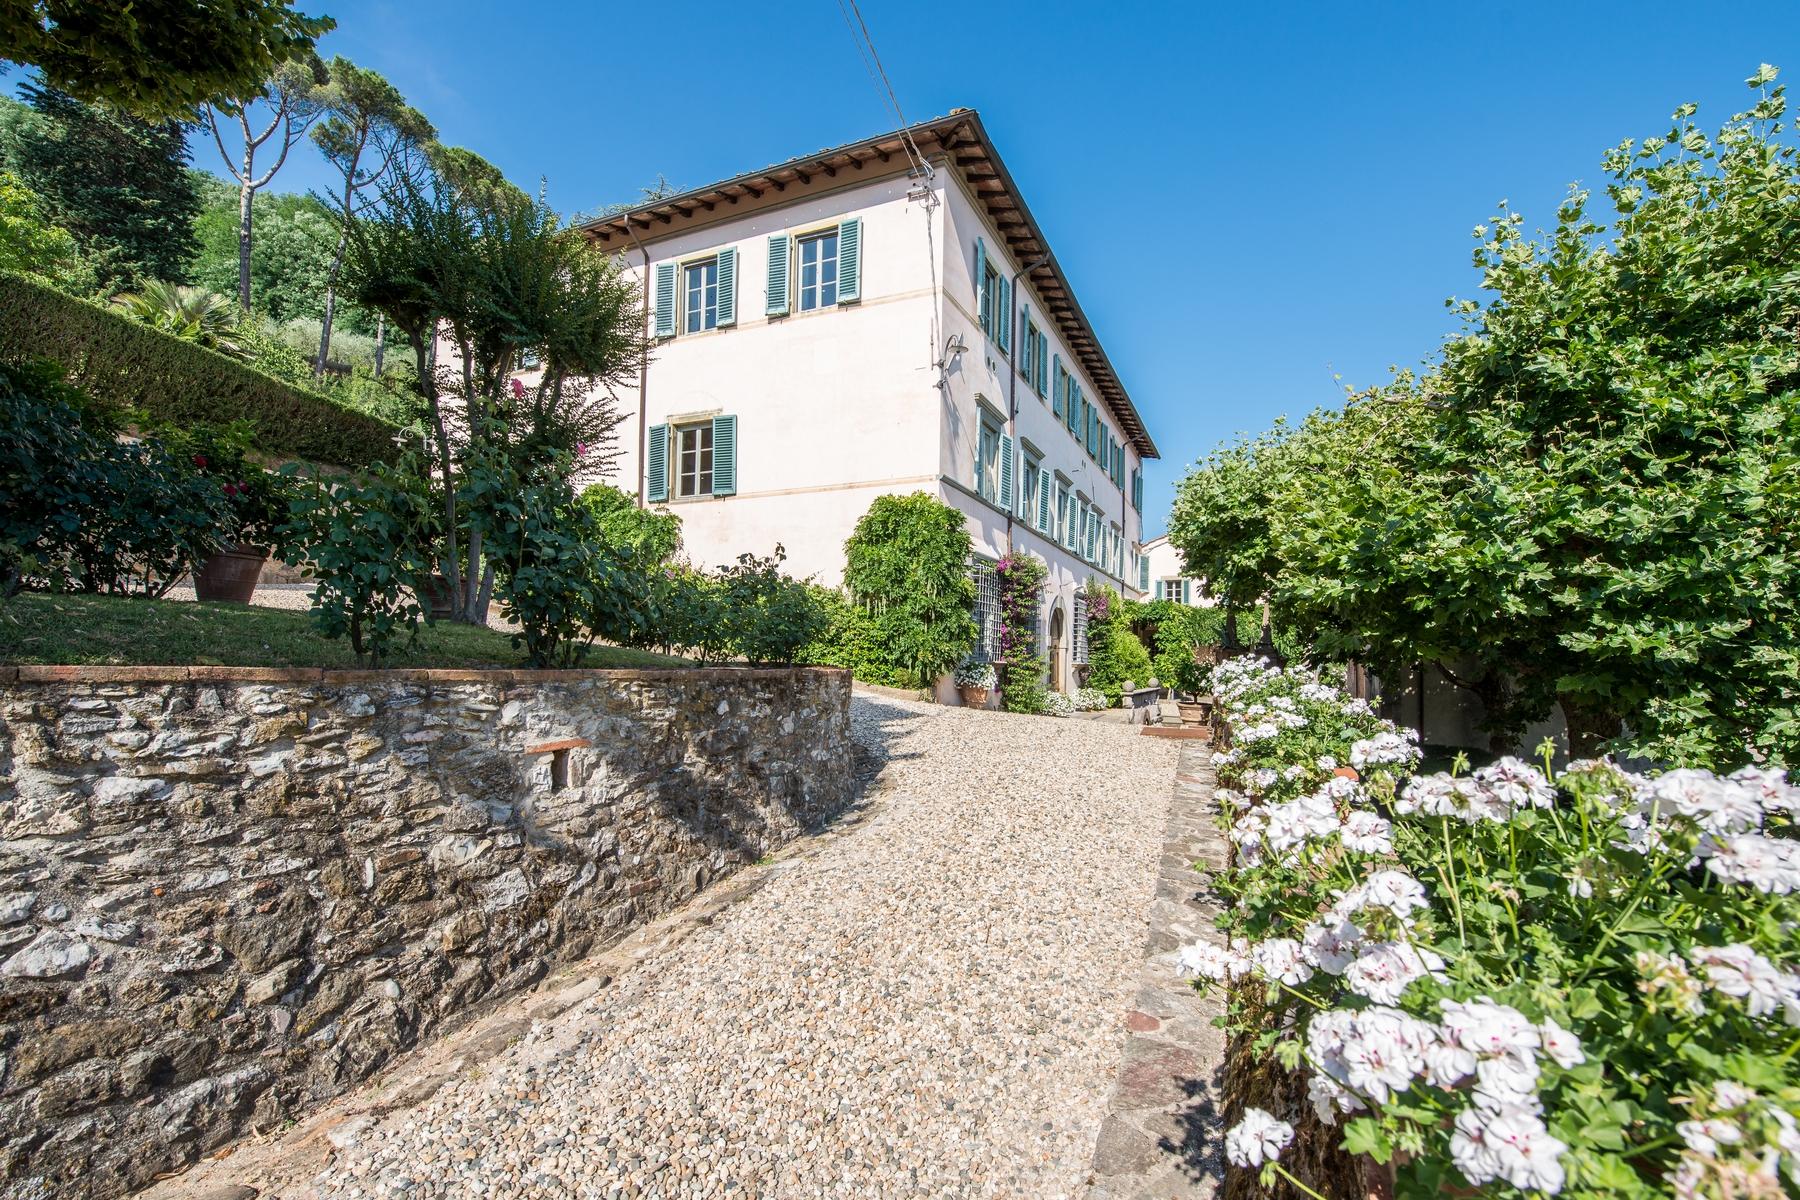 Splendida villa del 1700 nei pressi di Lucca - 20